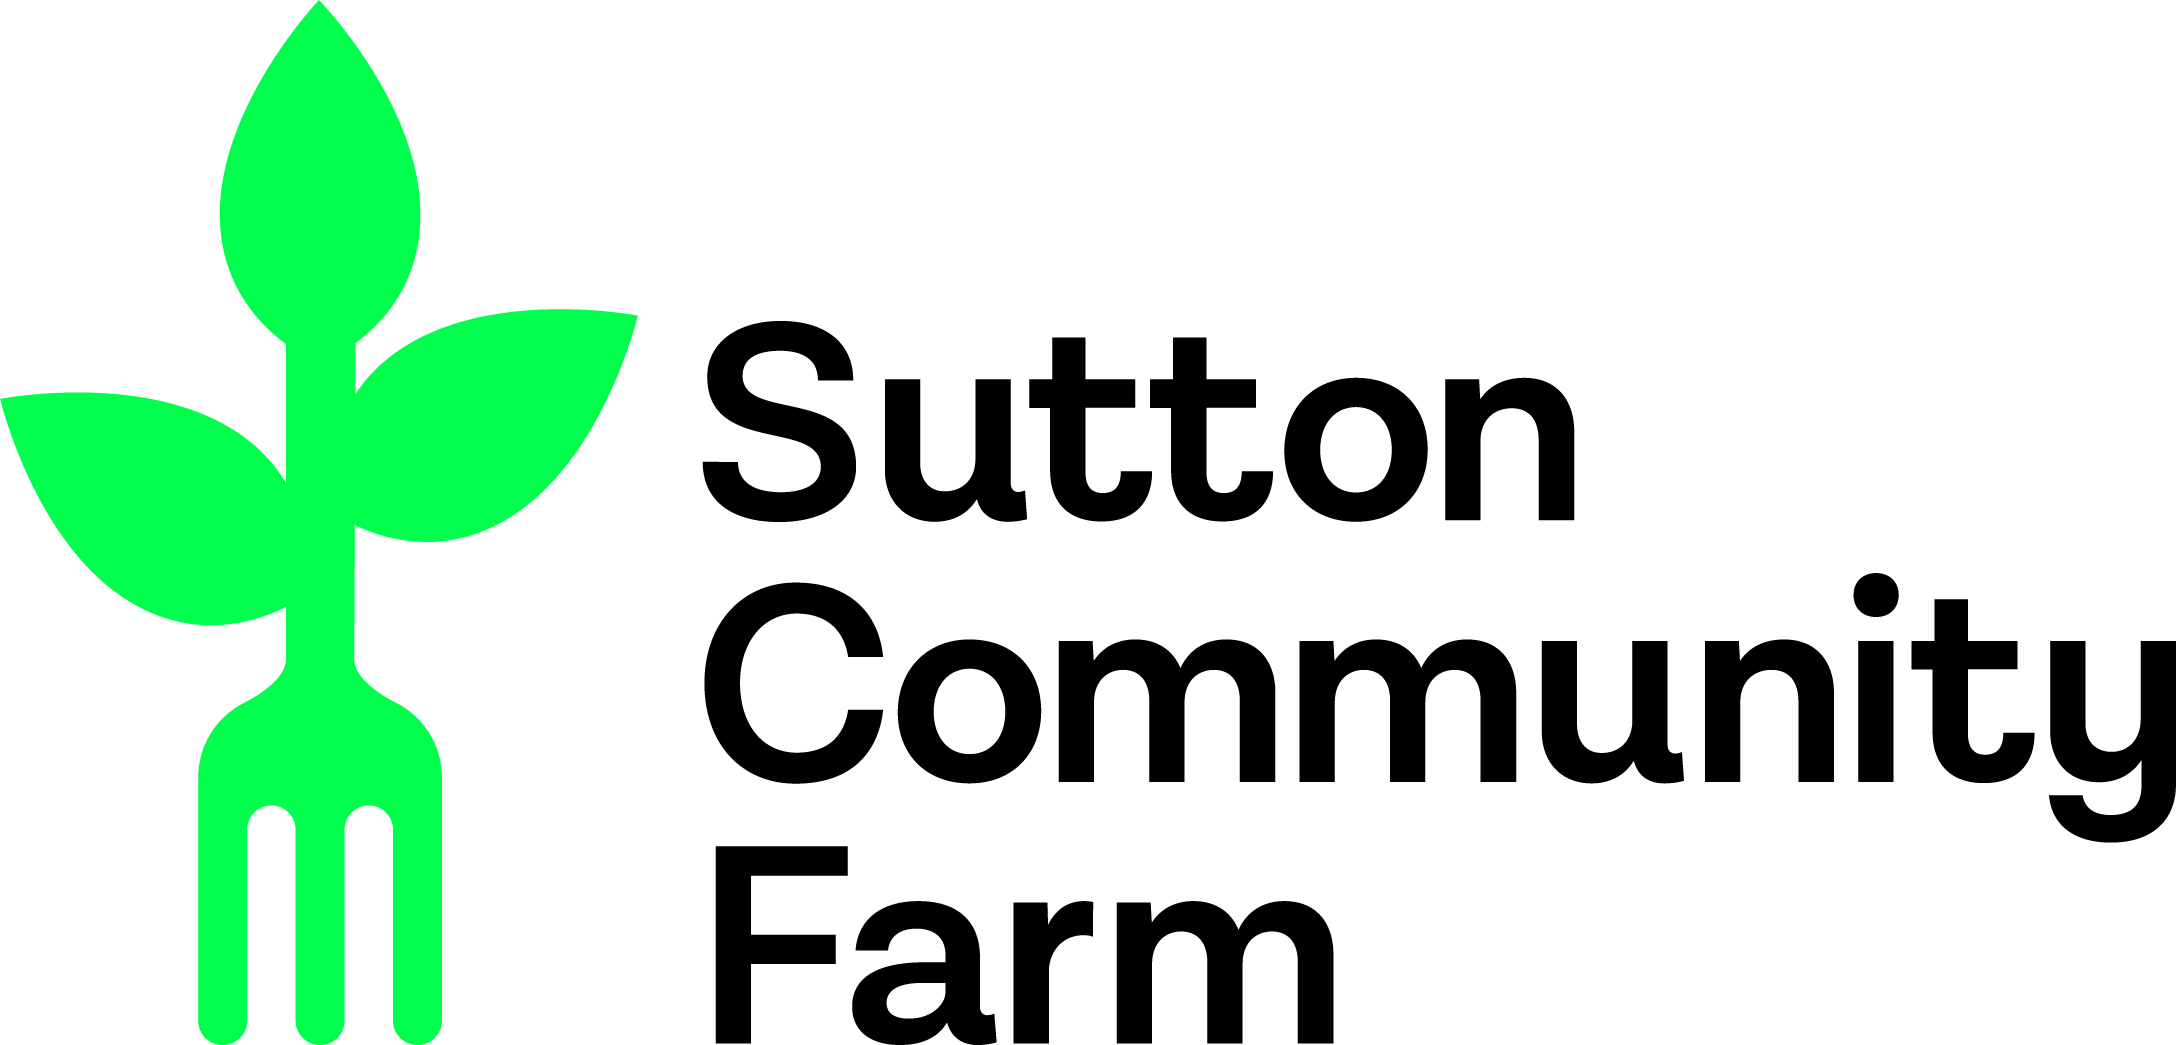 Sutton Community Farm logo